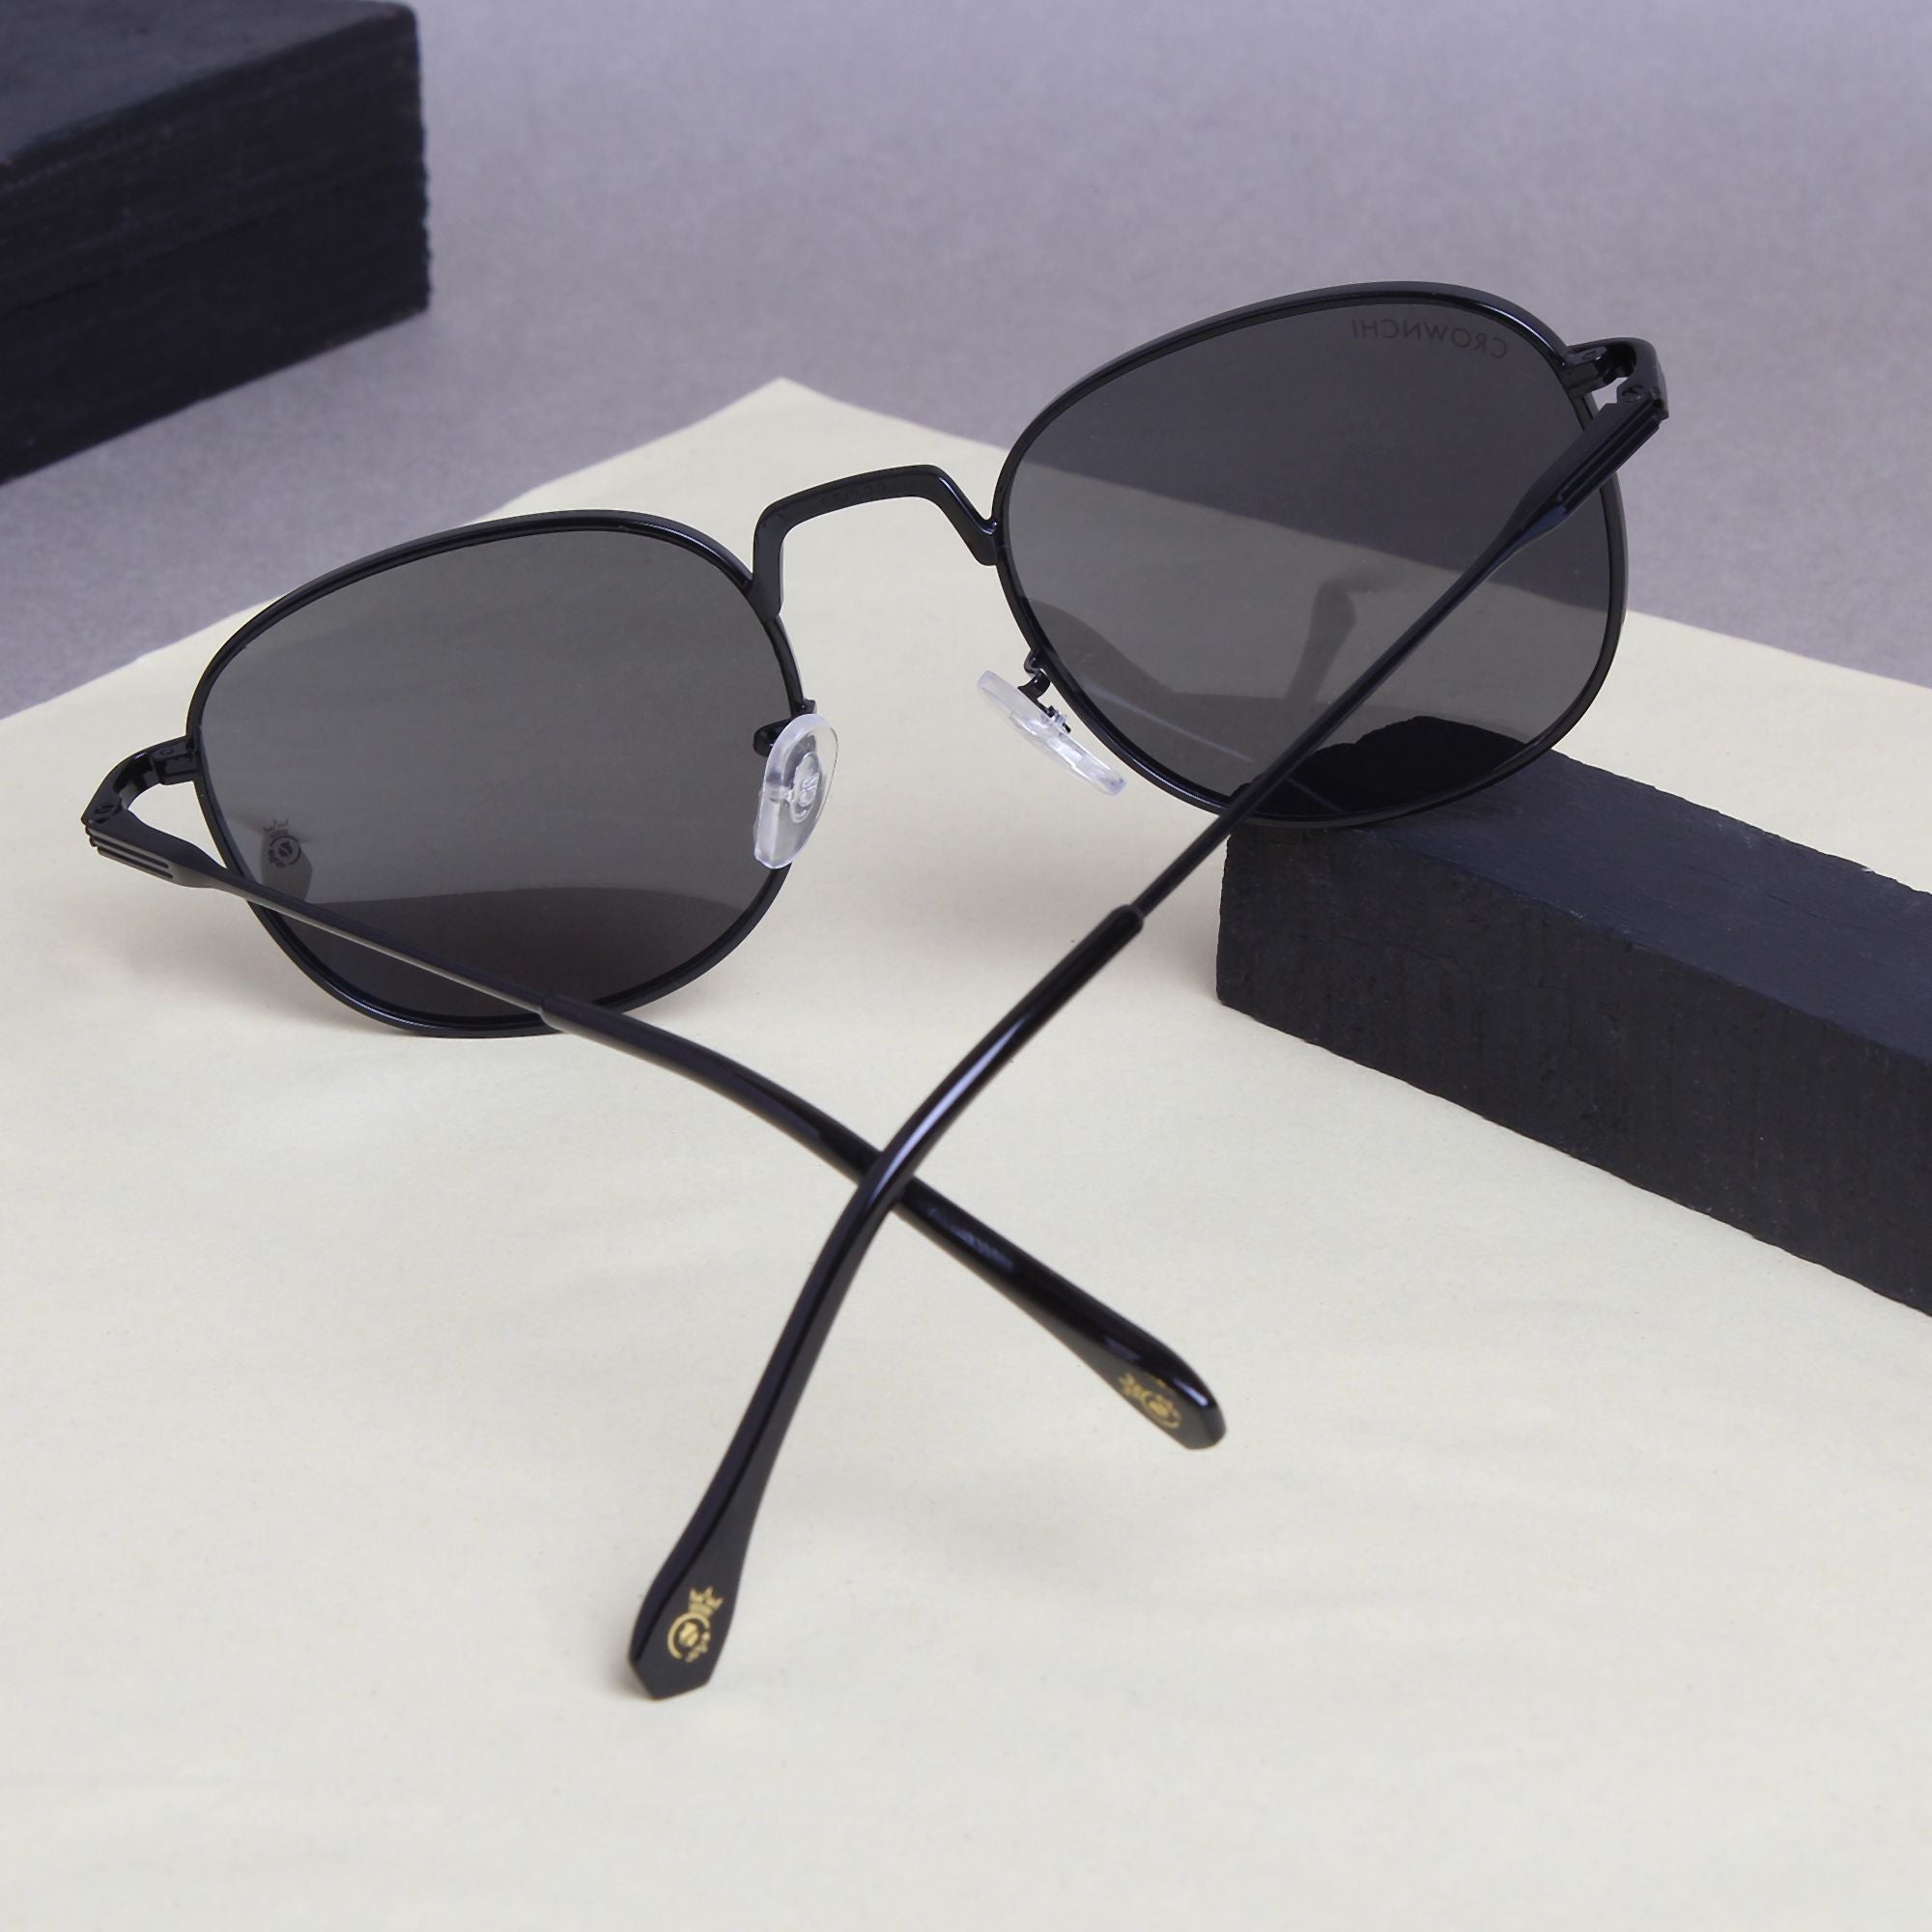 Crownchi Martin Black Round Edition Sunglasses